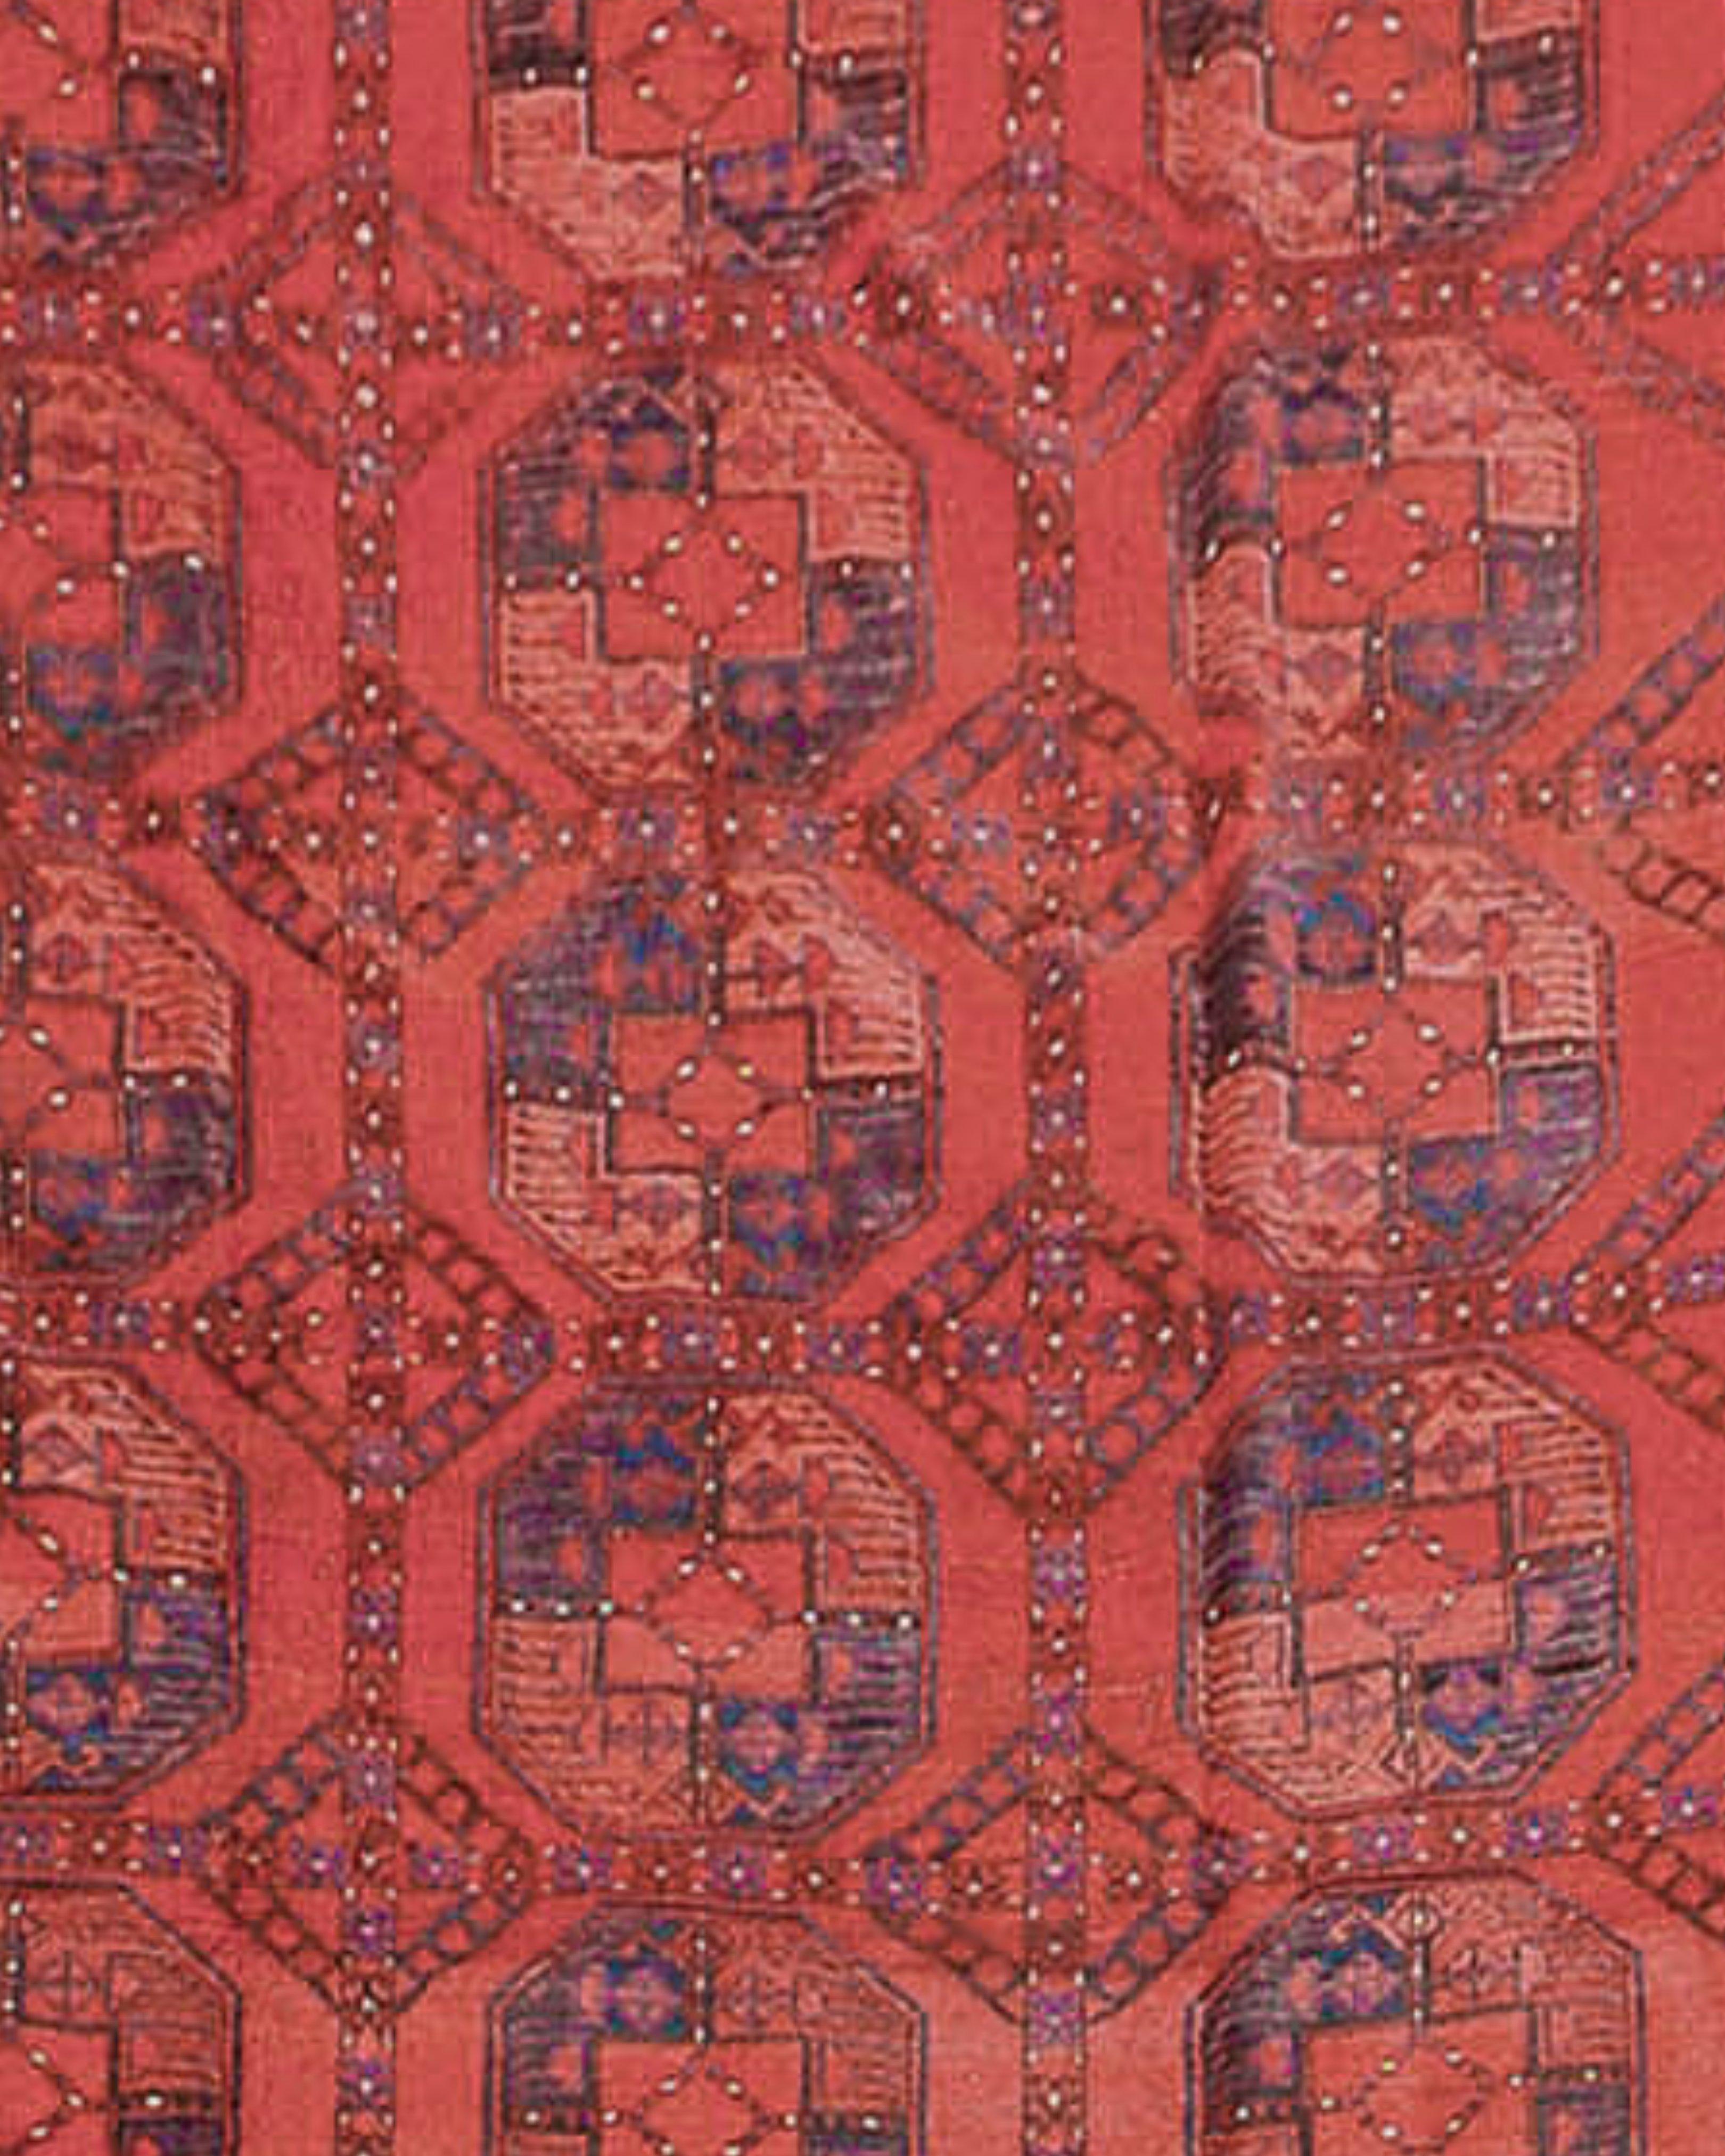 Großer afghanischer Ersari-Teppich, um 1900

Zusätzliche Informationen:
Abmessungen: 9'3